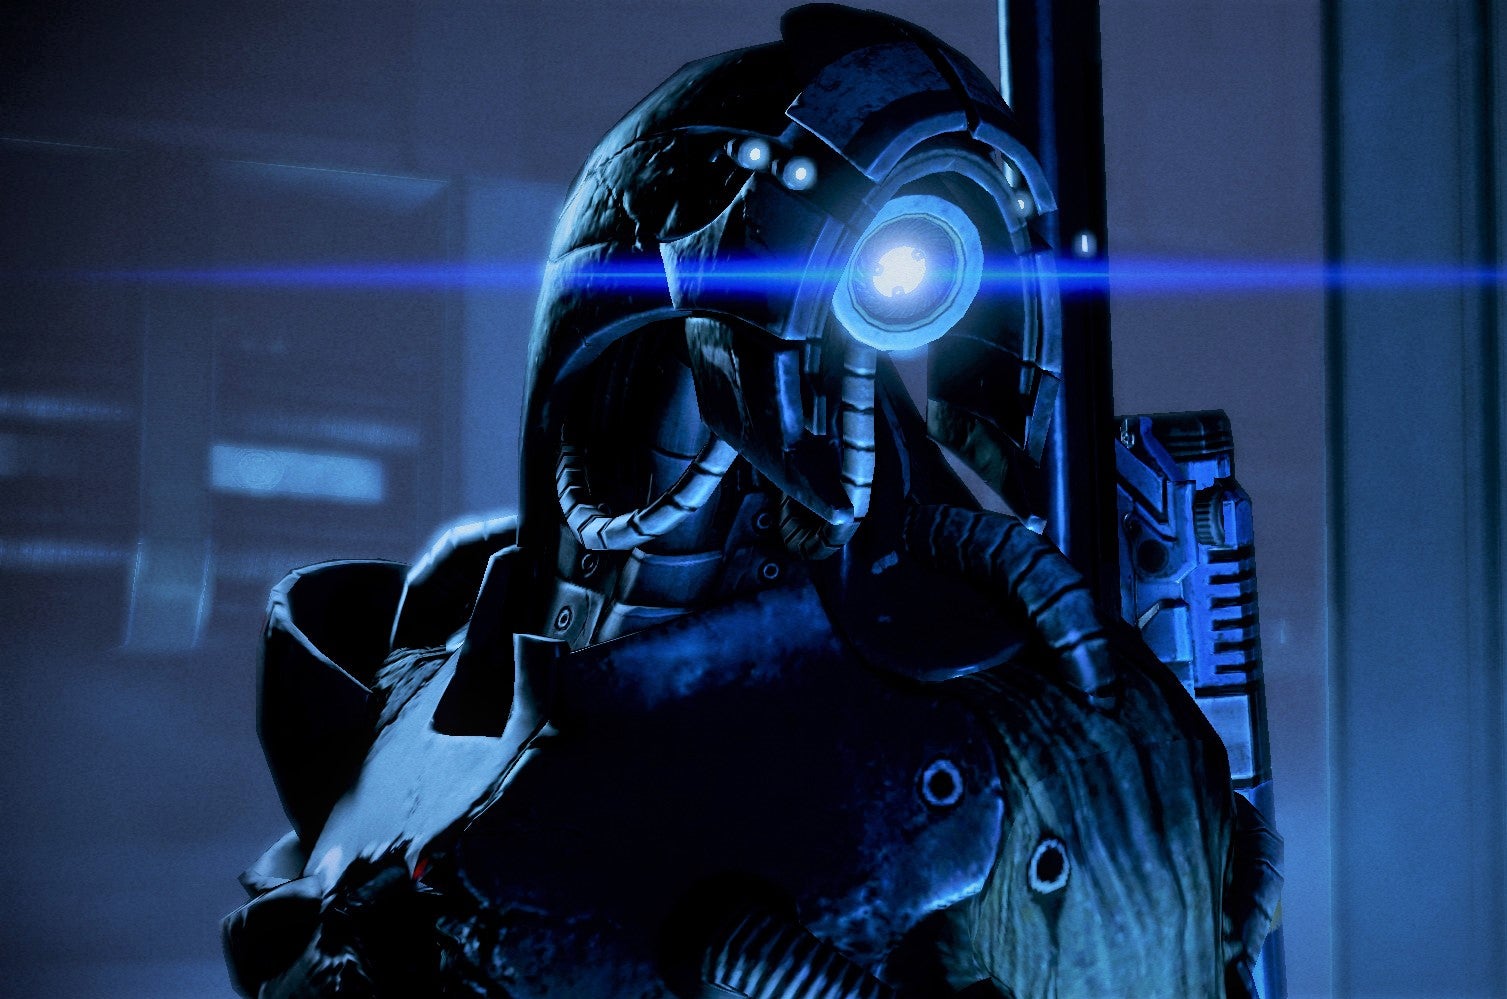 Obrazki dla Mass Effect 4 - obrazkowy teaser podkreśla znaczenie gethów